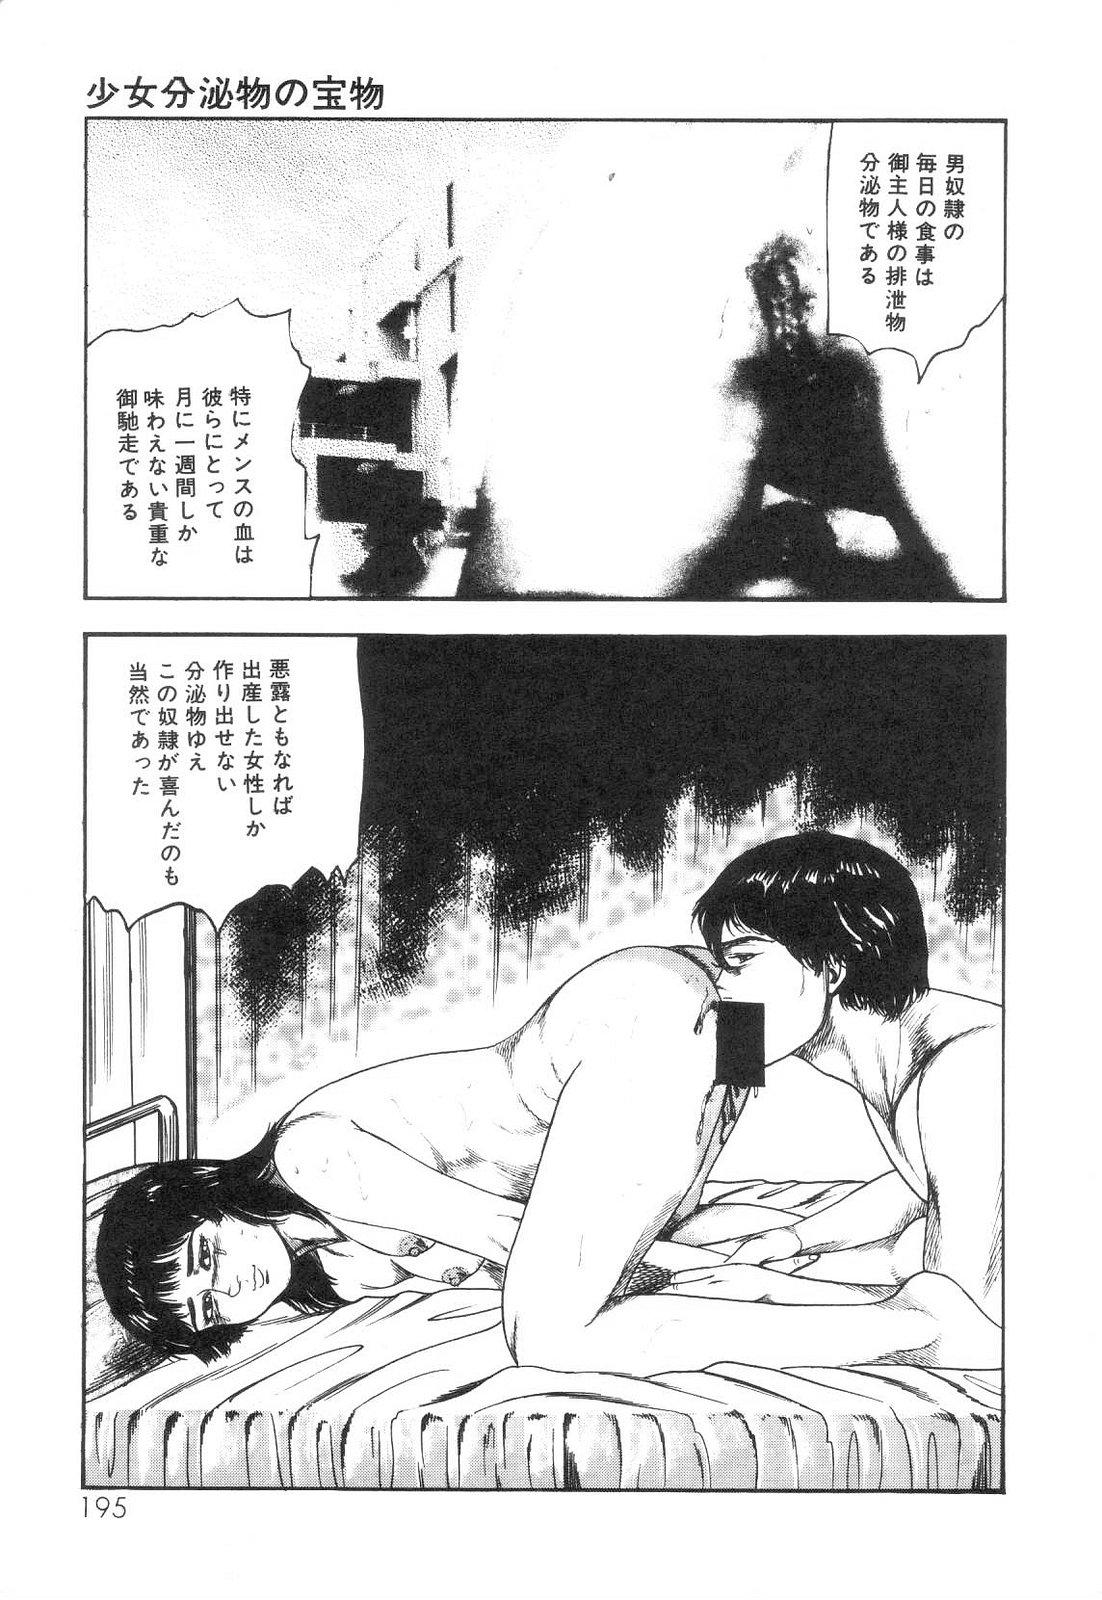 Shiro no Mokushiroku Vol. 6 - Juuai Erika no Shou 196